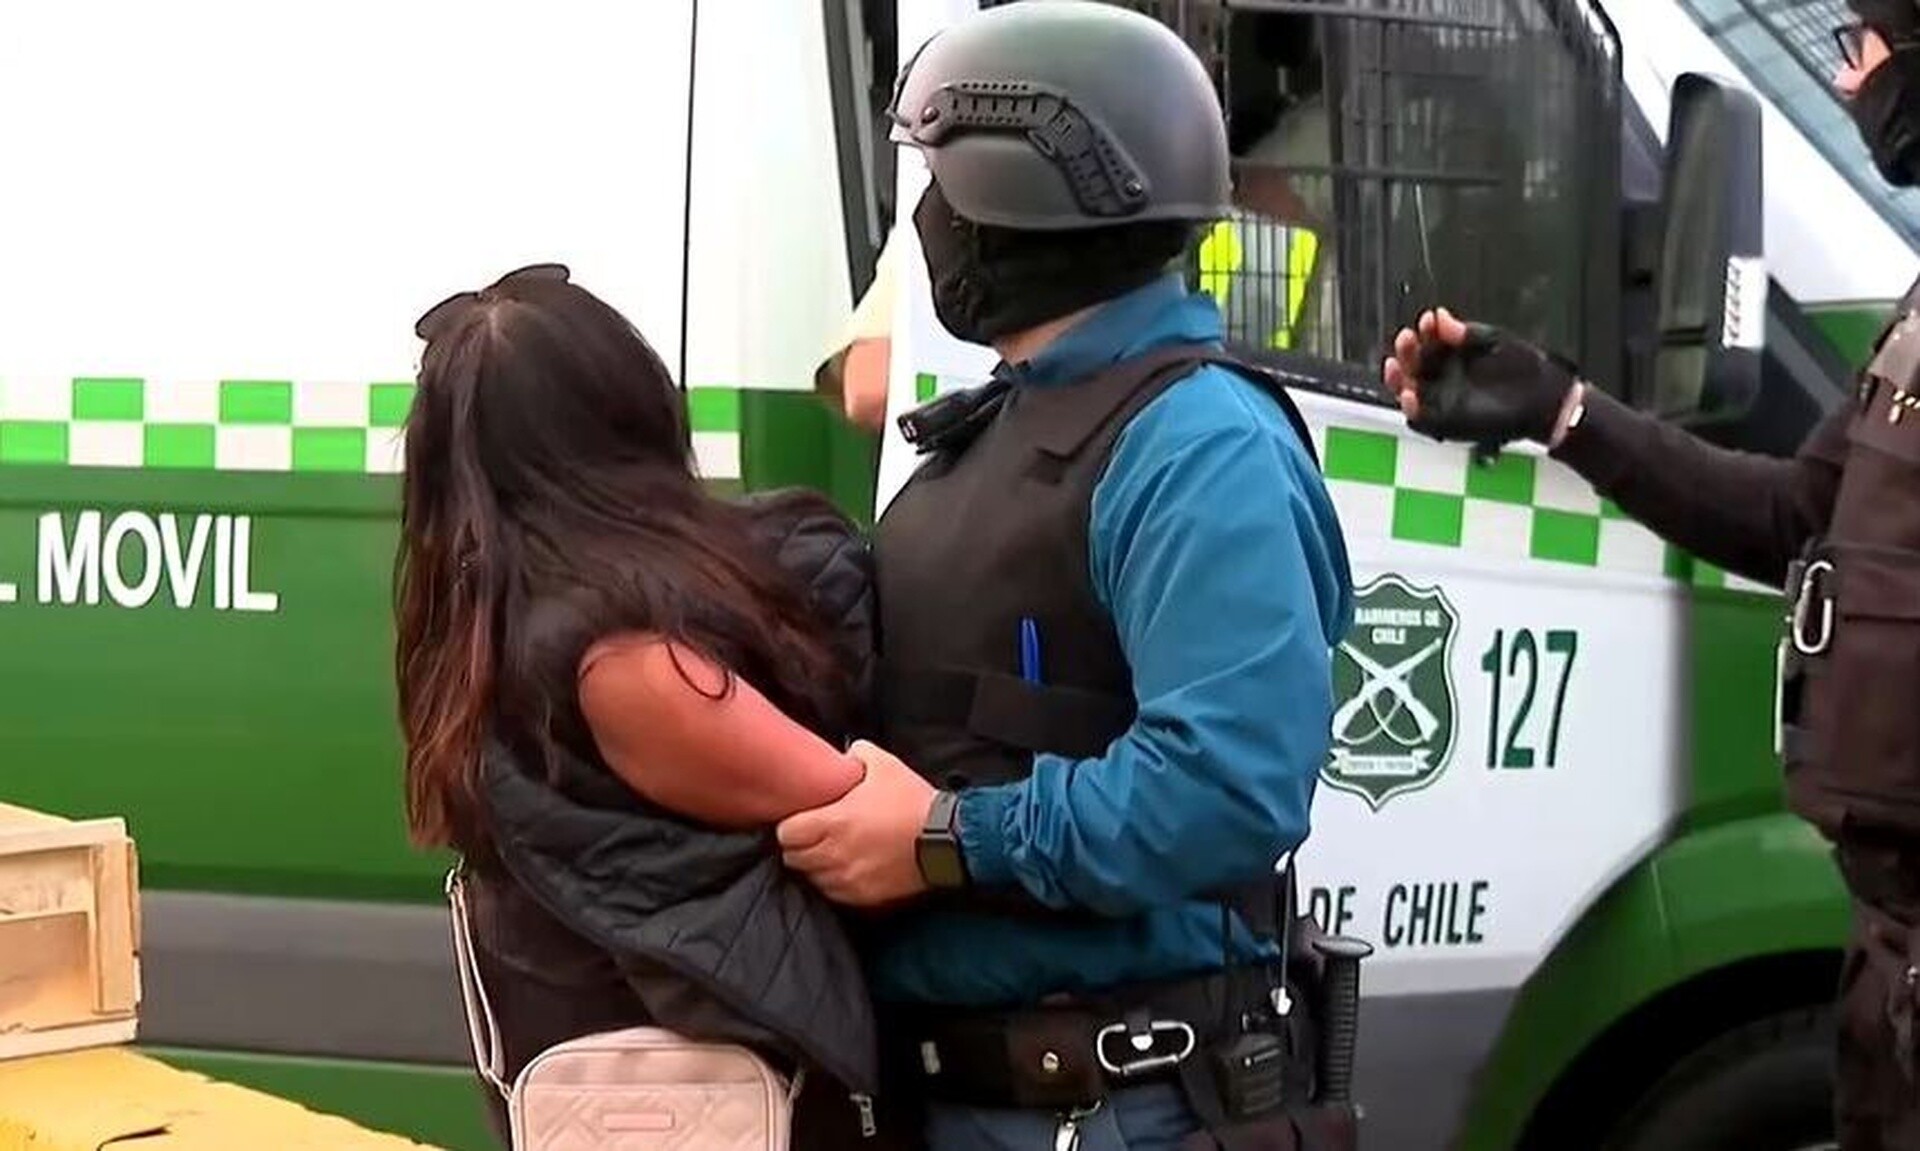 Θρίλερ στη Χιλή: Κρατούμενη άρπαξε όπλο αστυνομικού και άρχισε να πυροβολεί - Τρεις τραυματίες